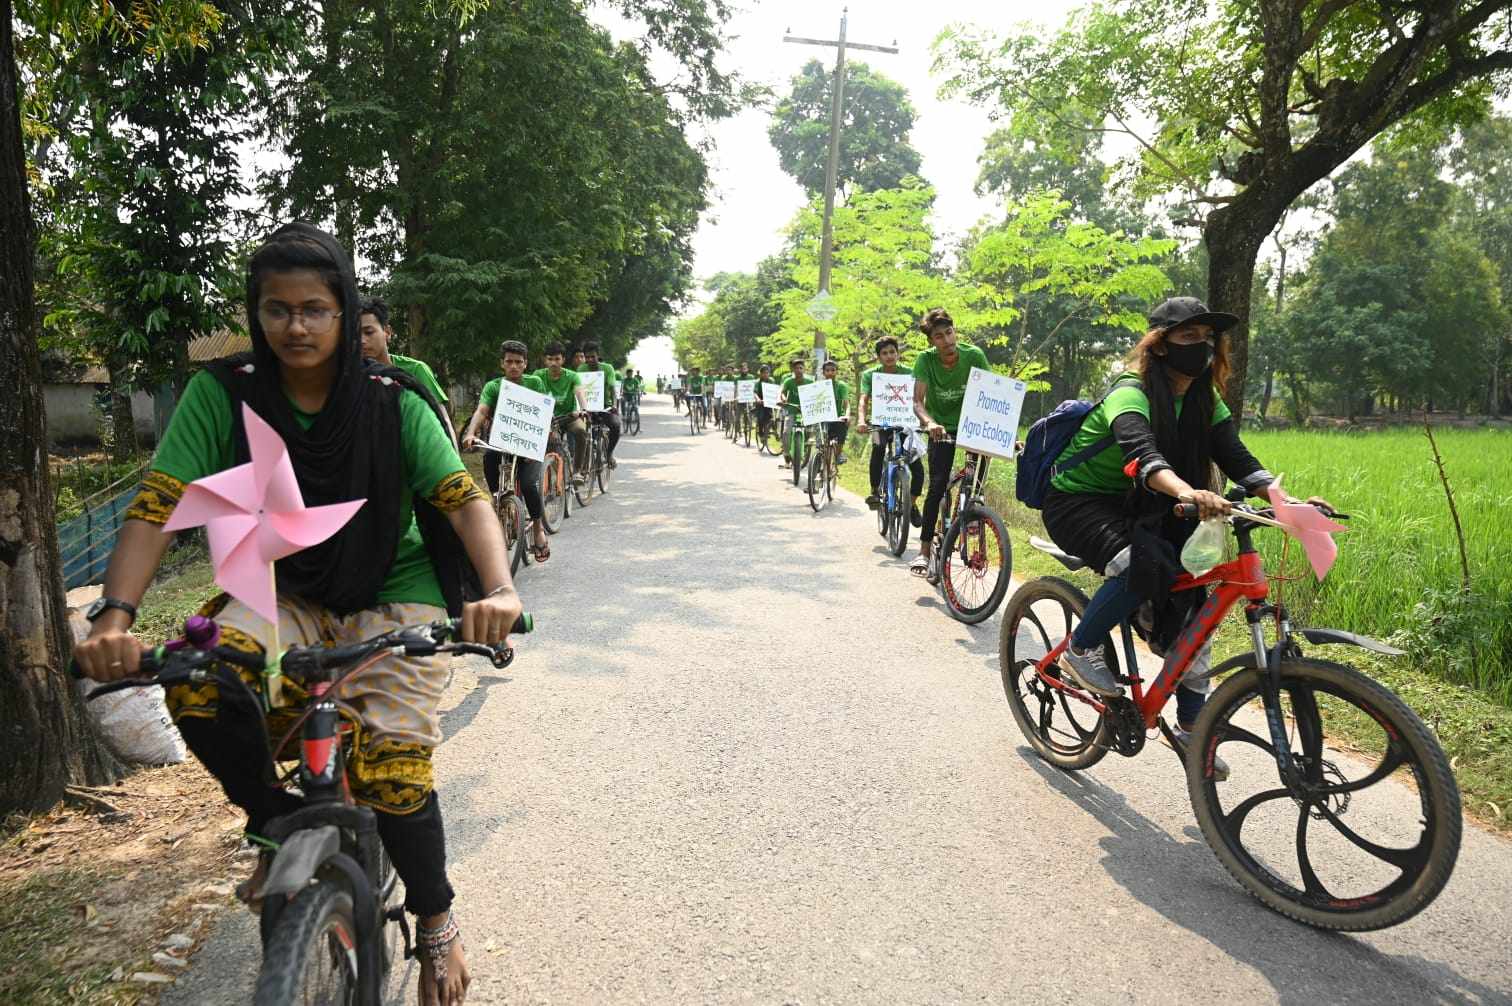 Bangladeş, Satkhira, 3 Kasım: Kadın hareketlerinin öncülüğünde her yaştan aktivist fosil yakıtların sona erdirilmesini istedi. Yenilenebilir enerji kaynaklarına daha fazla yatırım yapılmasını talep eden aktivistler, gün boyunca bisikletli bir protesto da dahil olmak üzere çeşitli eylemler düzenlediler. Fotoğraf: BINDU Nari Unnayan Sangathan